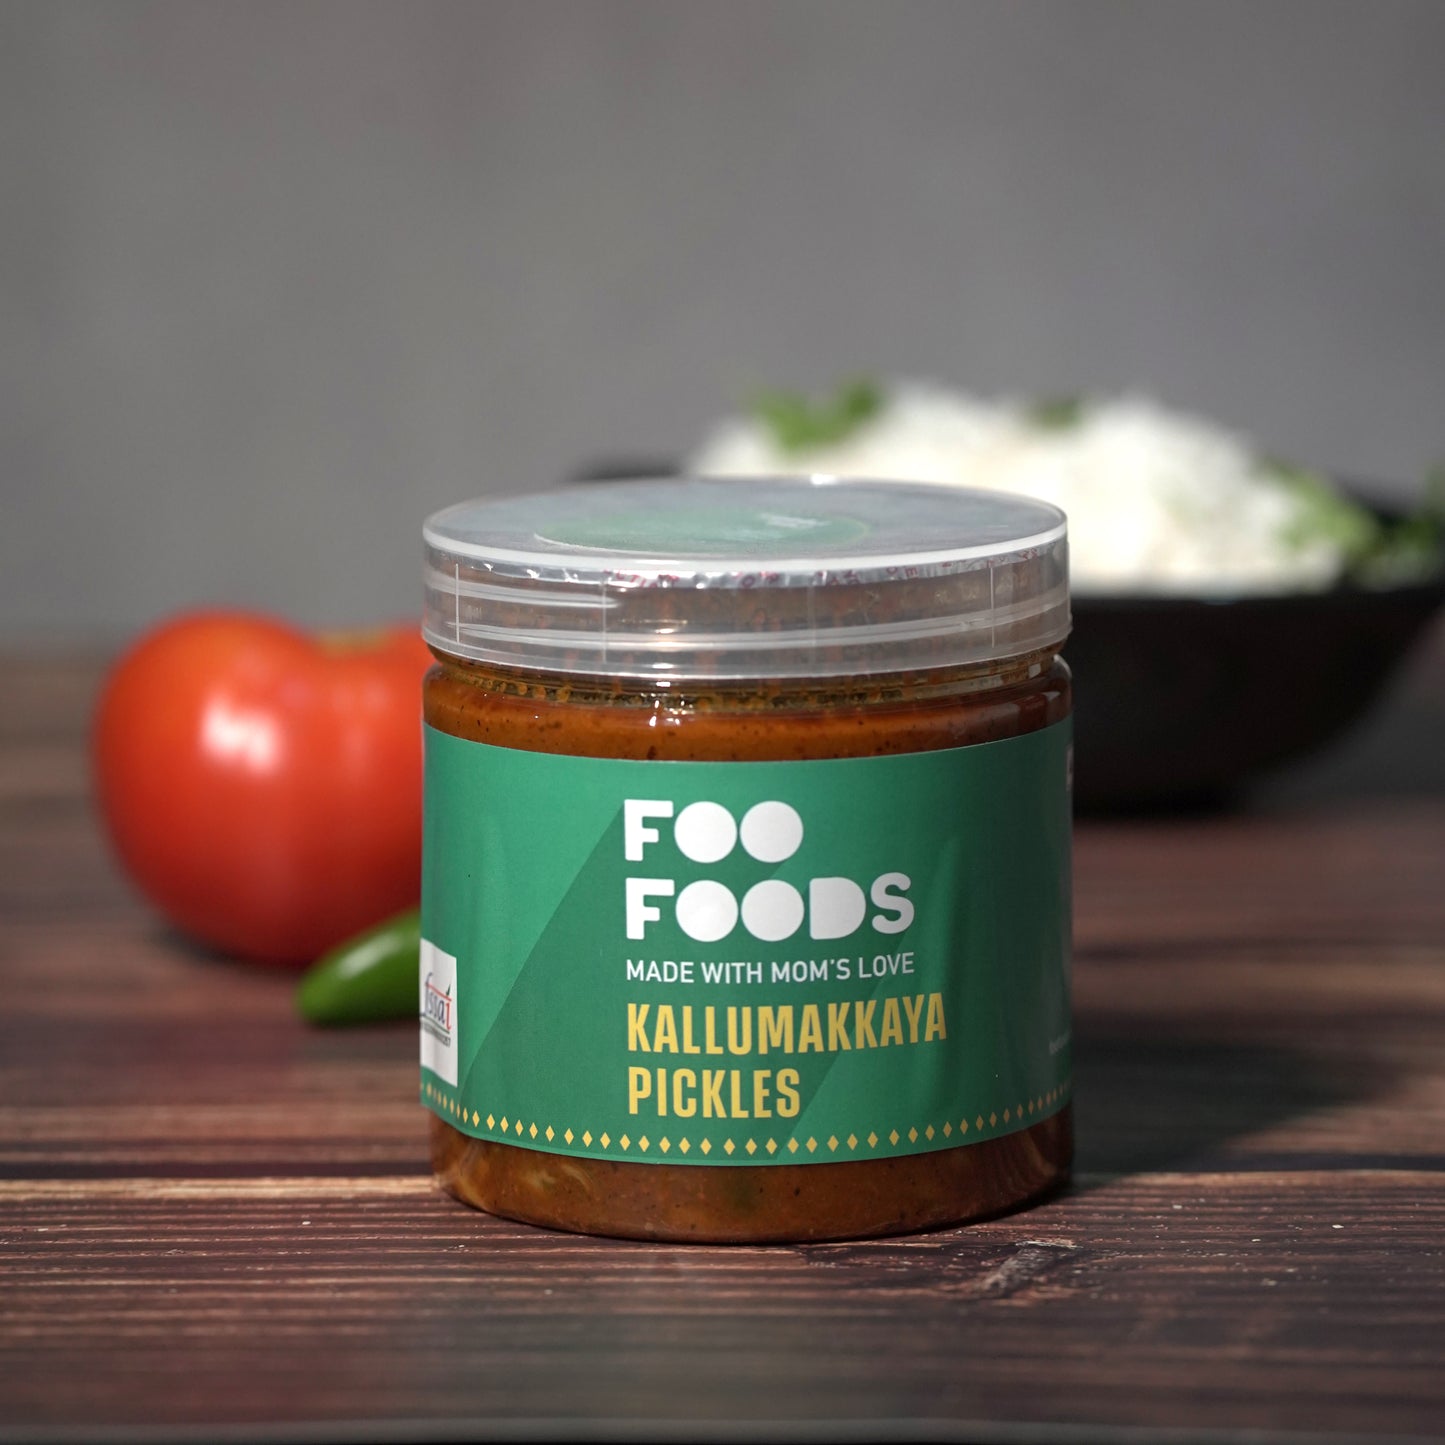 Kallumakkaya Pickle/ Mussels Pickle - Mom's Recipe & 100% Natural Ingredients